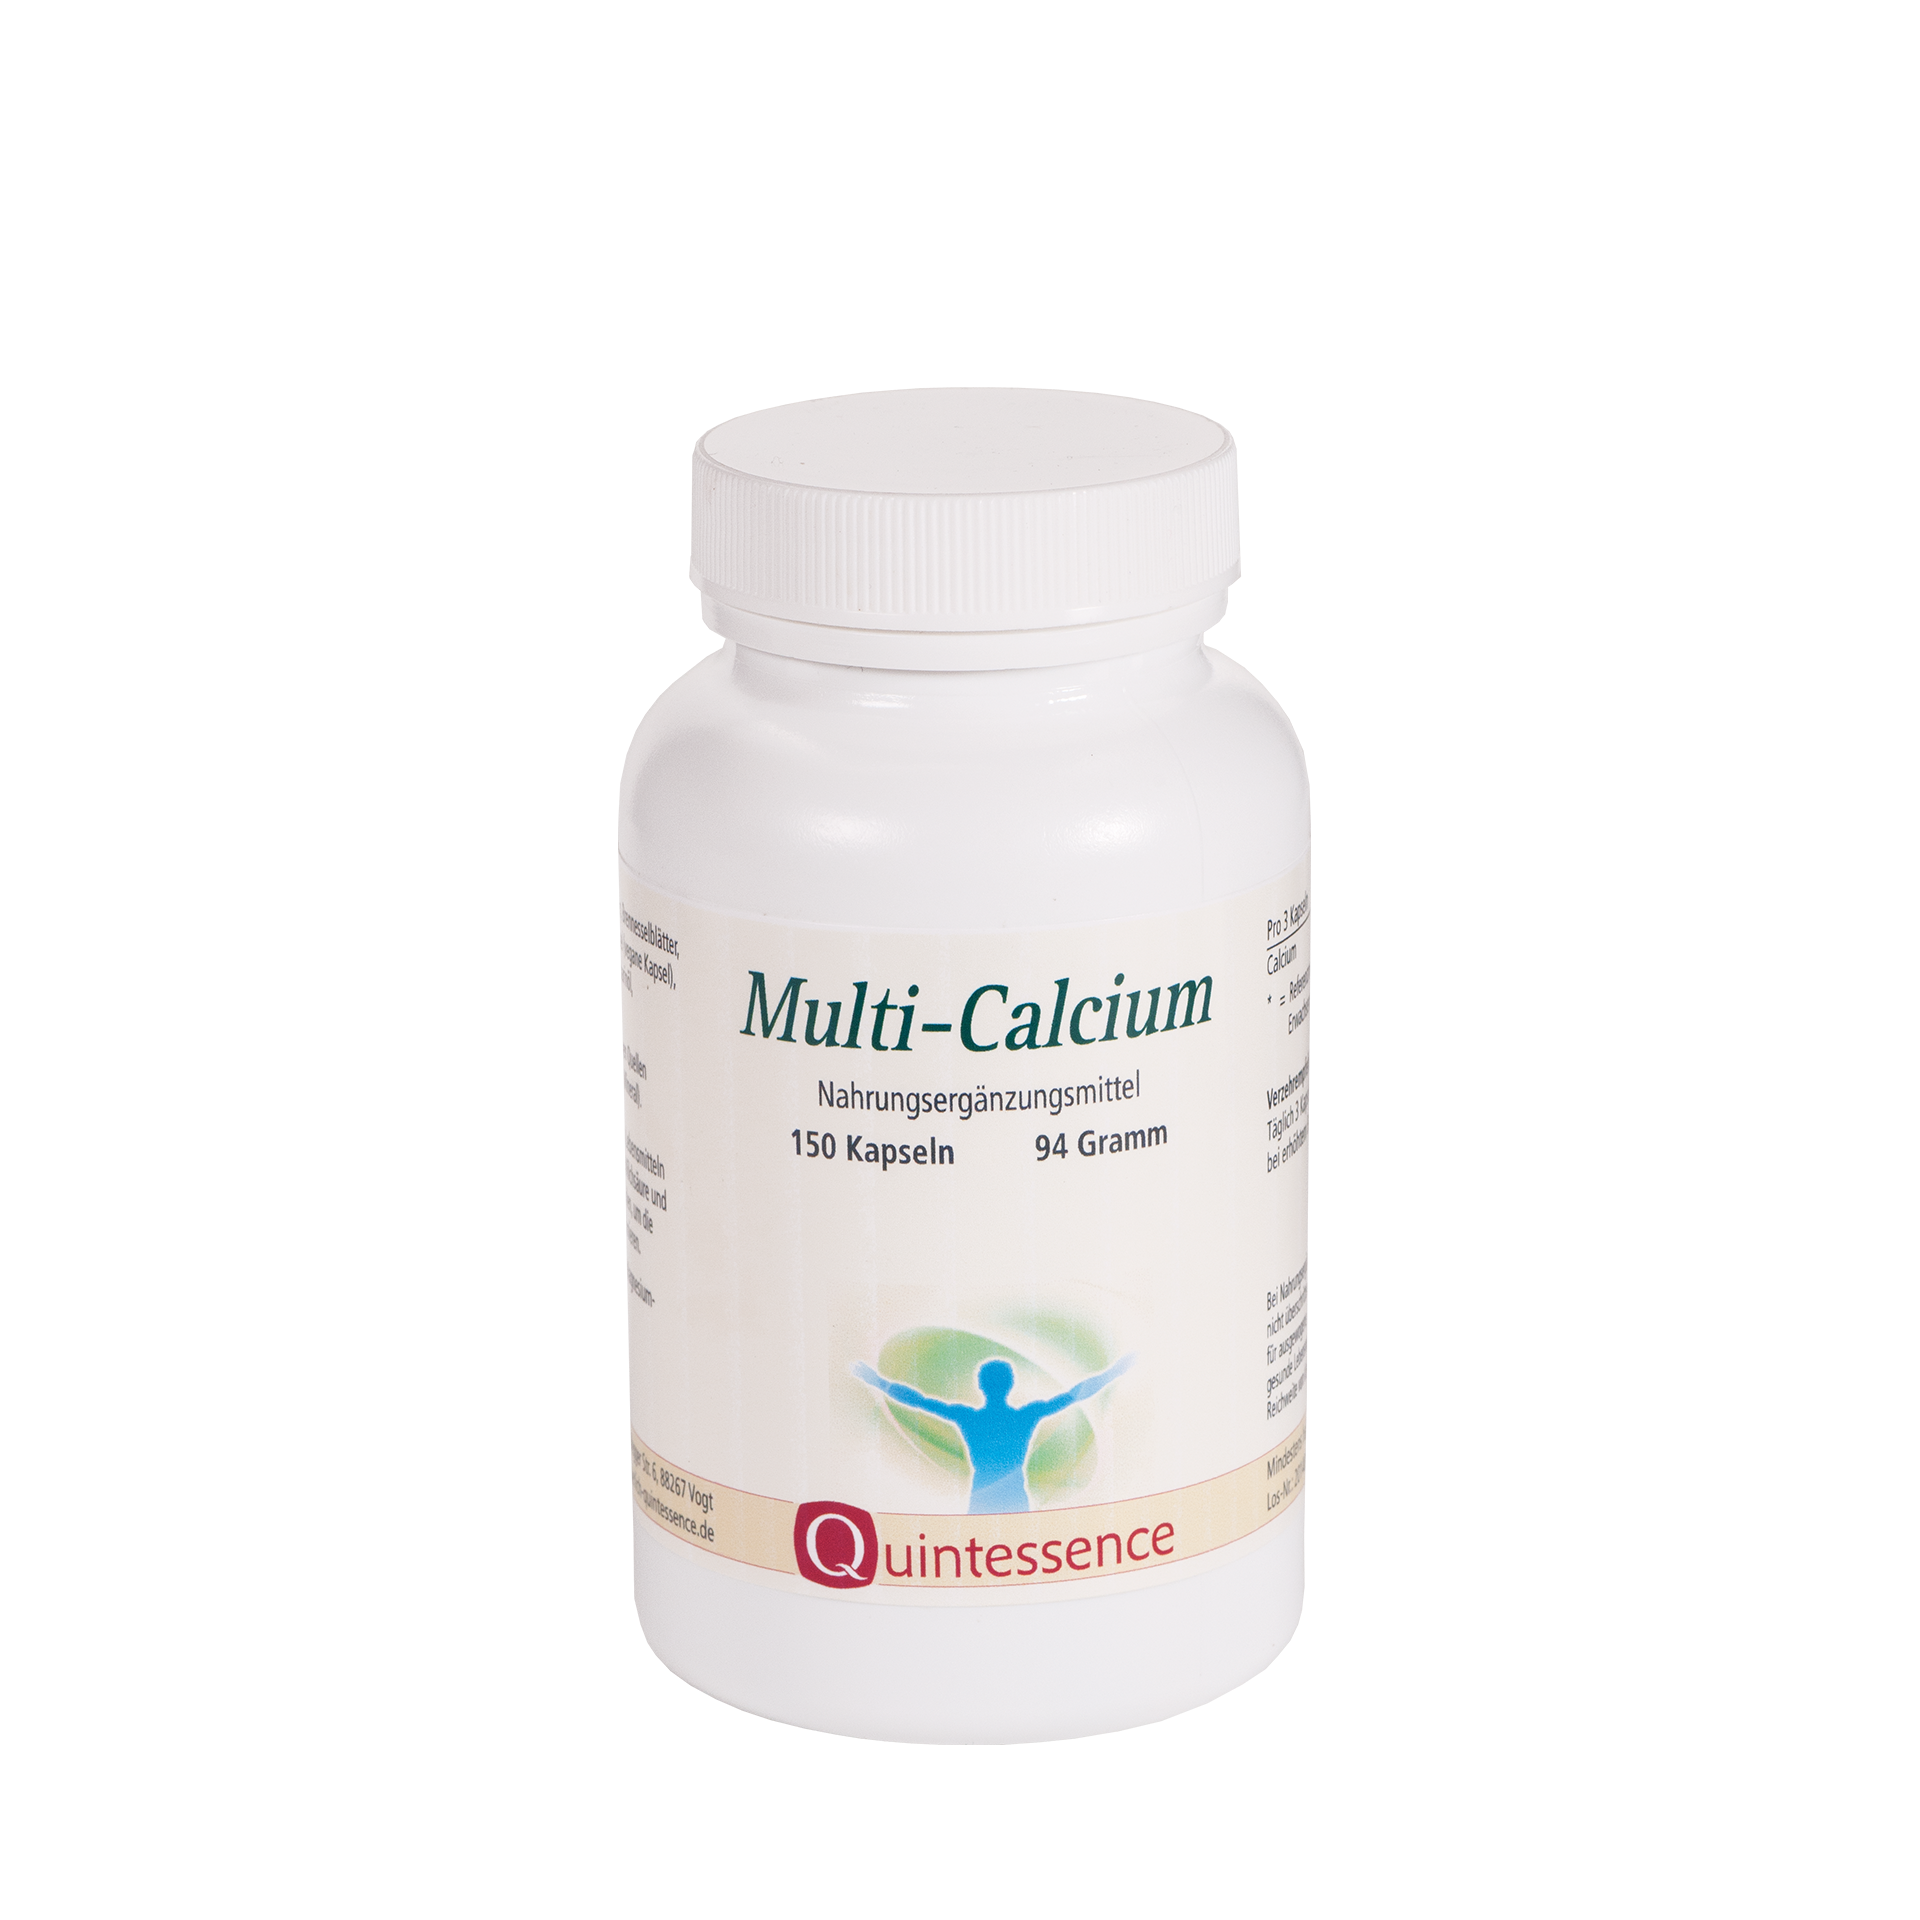 Multi-Calcium, 150 Kapseln